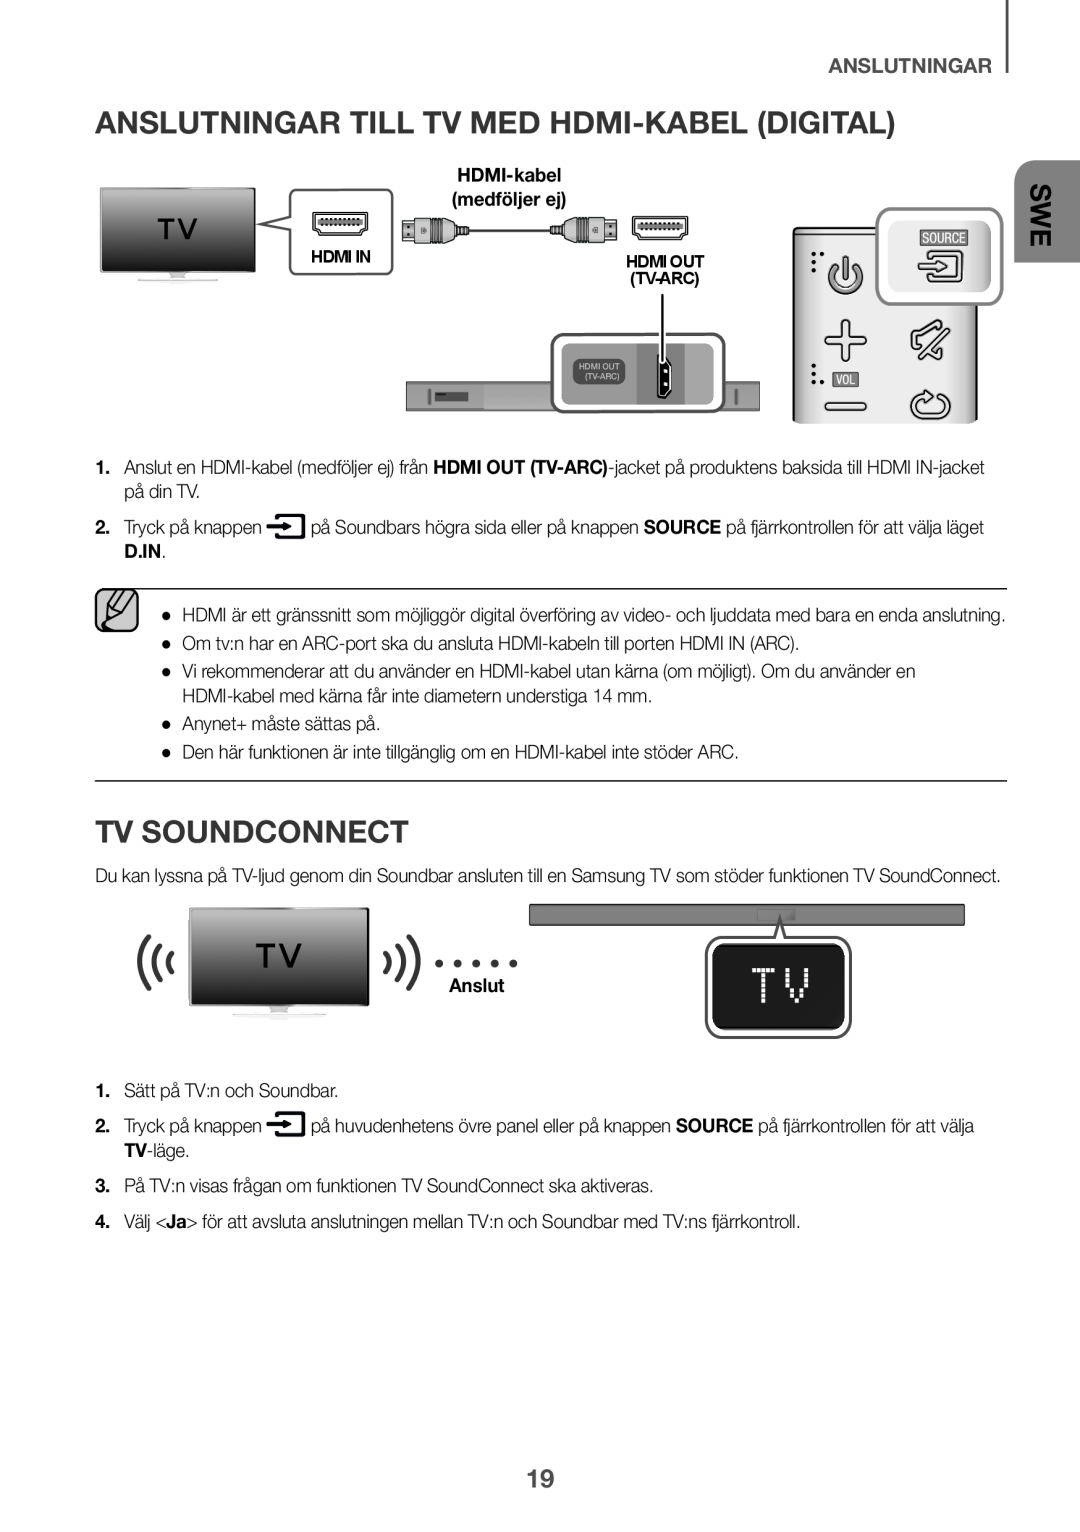 Samsung HW-K650/XN, HW-K651/EN, HW-K650/EN Anslutningar till tv med HDMI-kabel Digital, TV SoundConnect, anslutningar, D.In 